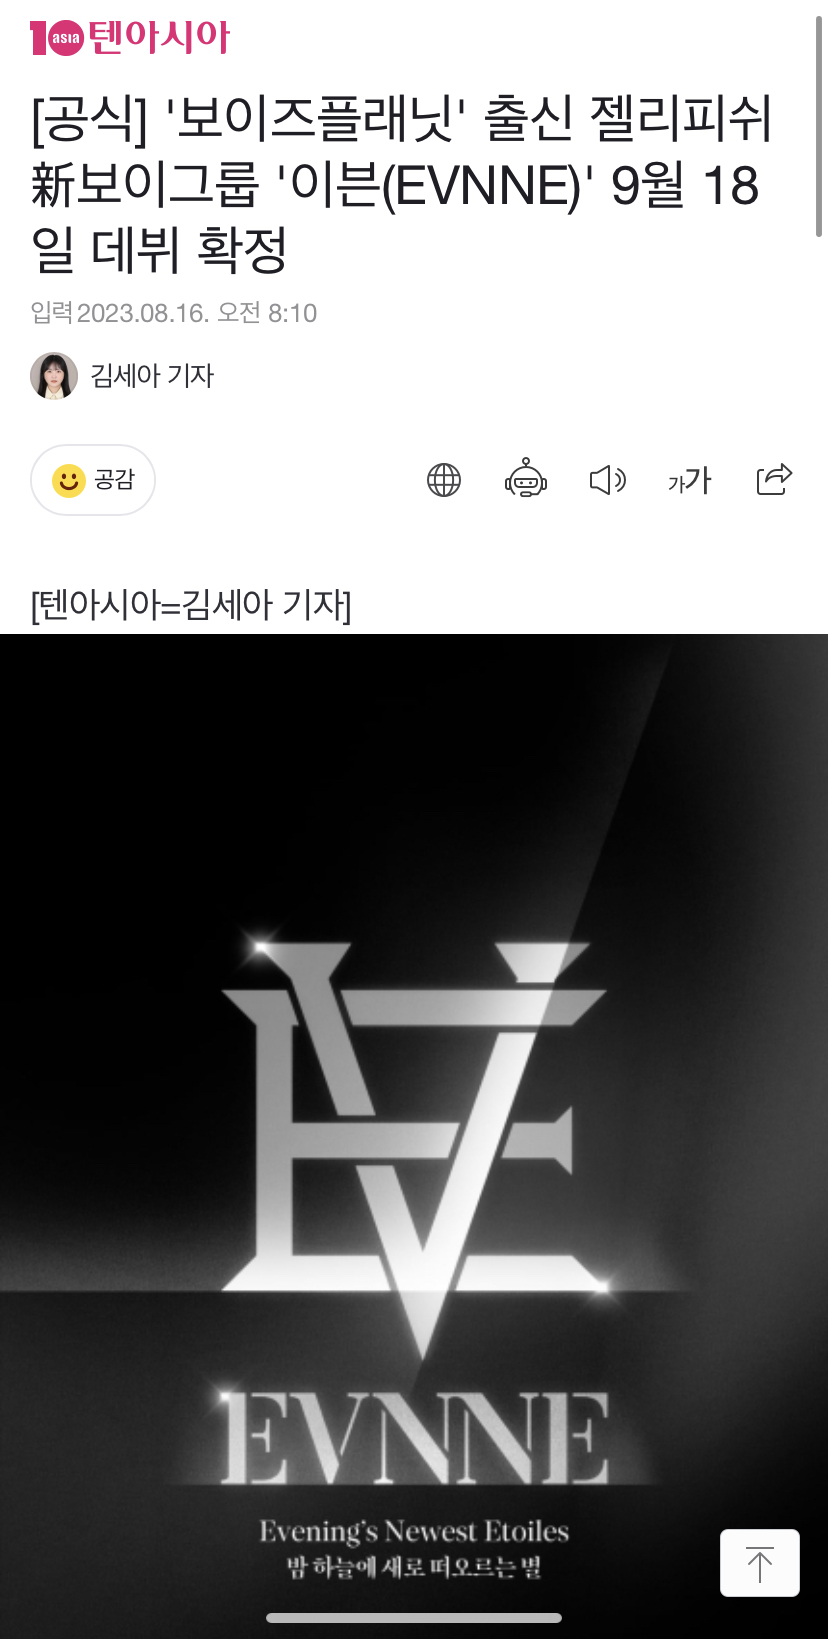 [정보/소식] [공식] '보이즈플래닛' 출신 젤리피쉬 新보이그룹 '이븐(EVNNE)' 9월 18일 데뷔 확정 | 인스티즈